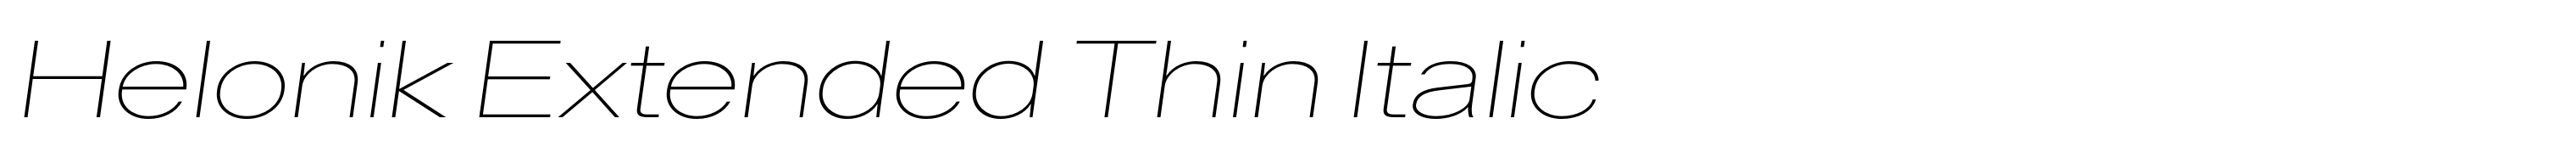 Helonik Extended Thin Italic